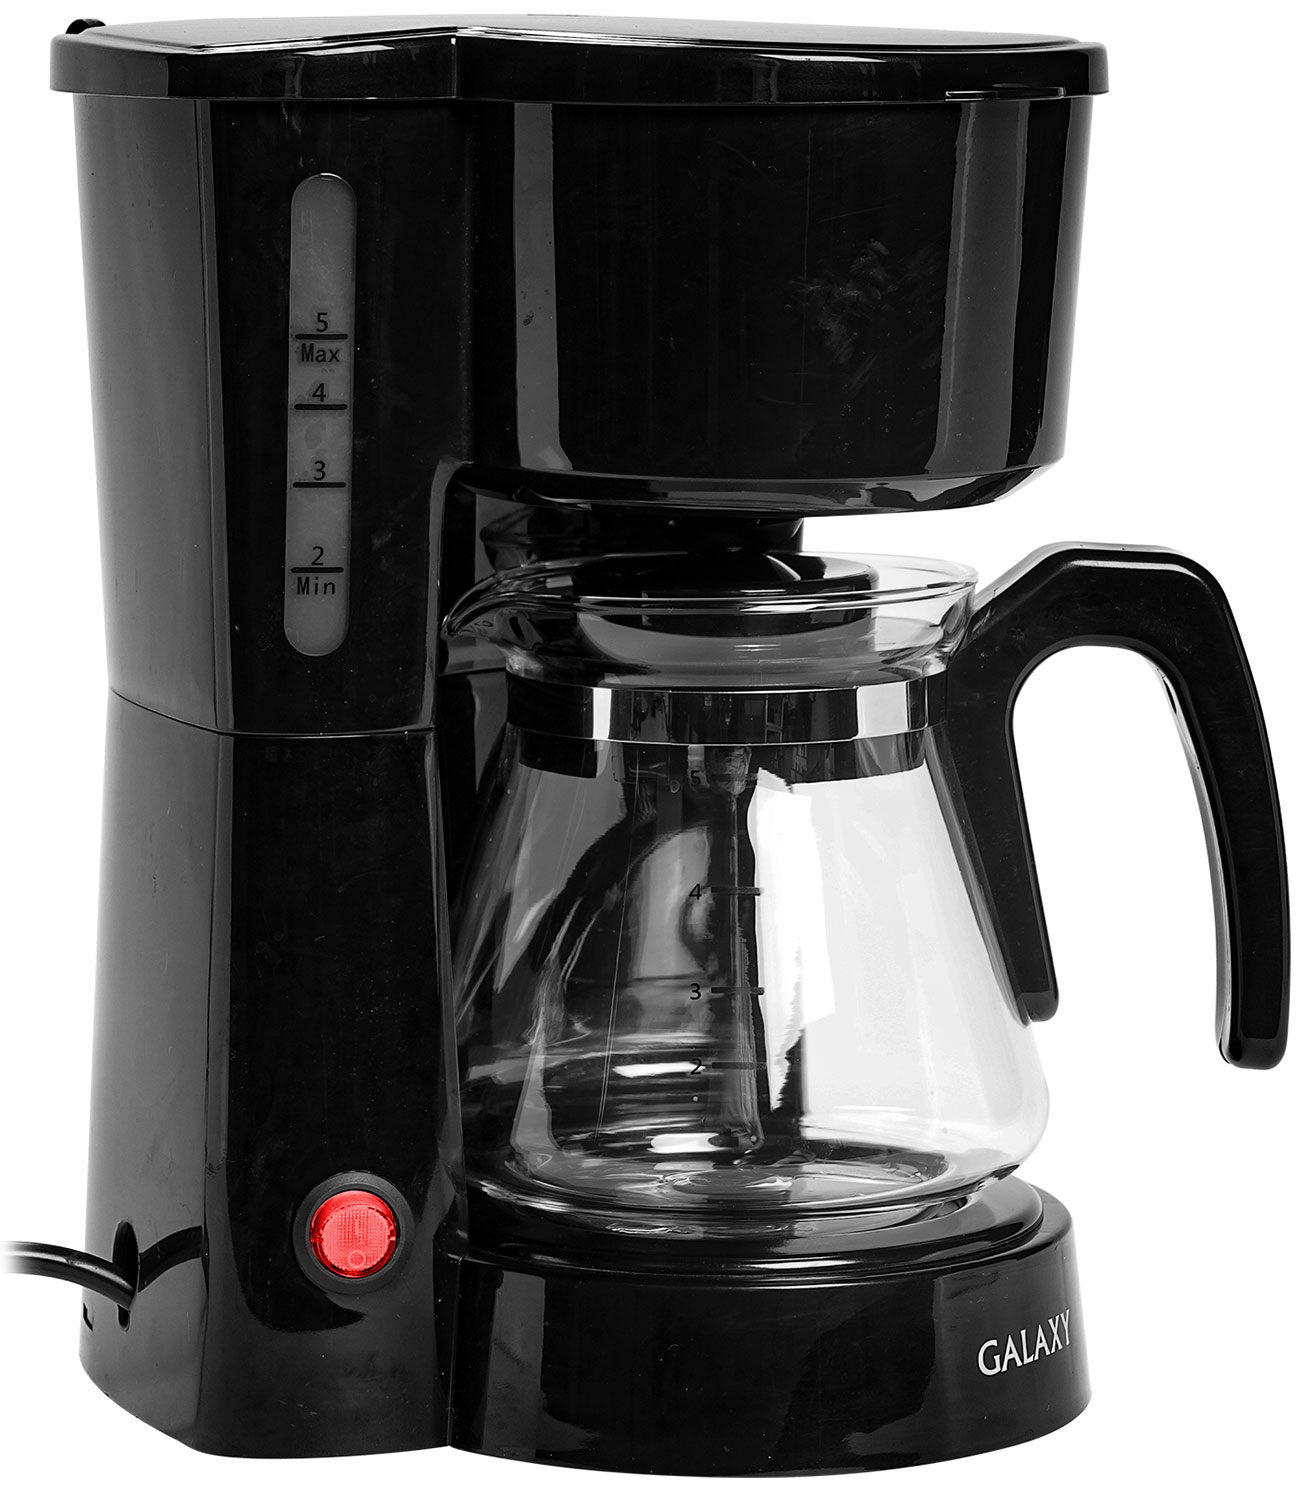 Кофеварка электрическая Galaxy GL0709 черная кофеварка капельного типа russell hobbs buckingham 20680 56